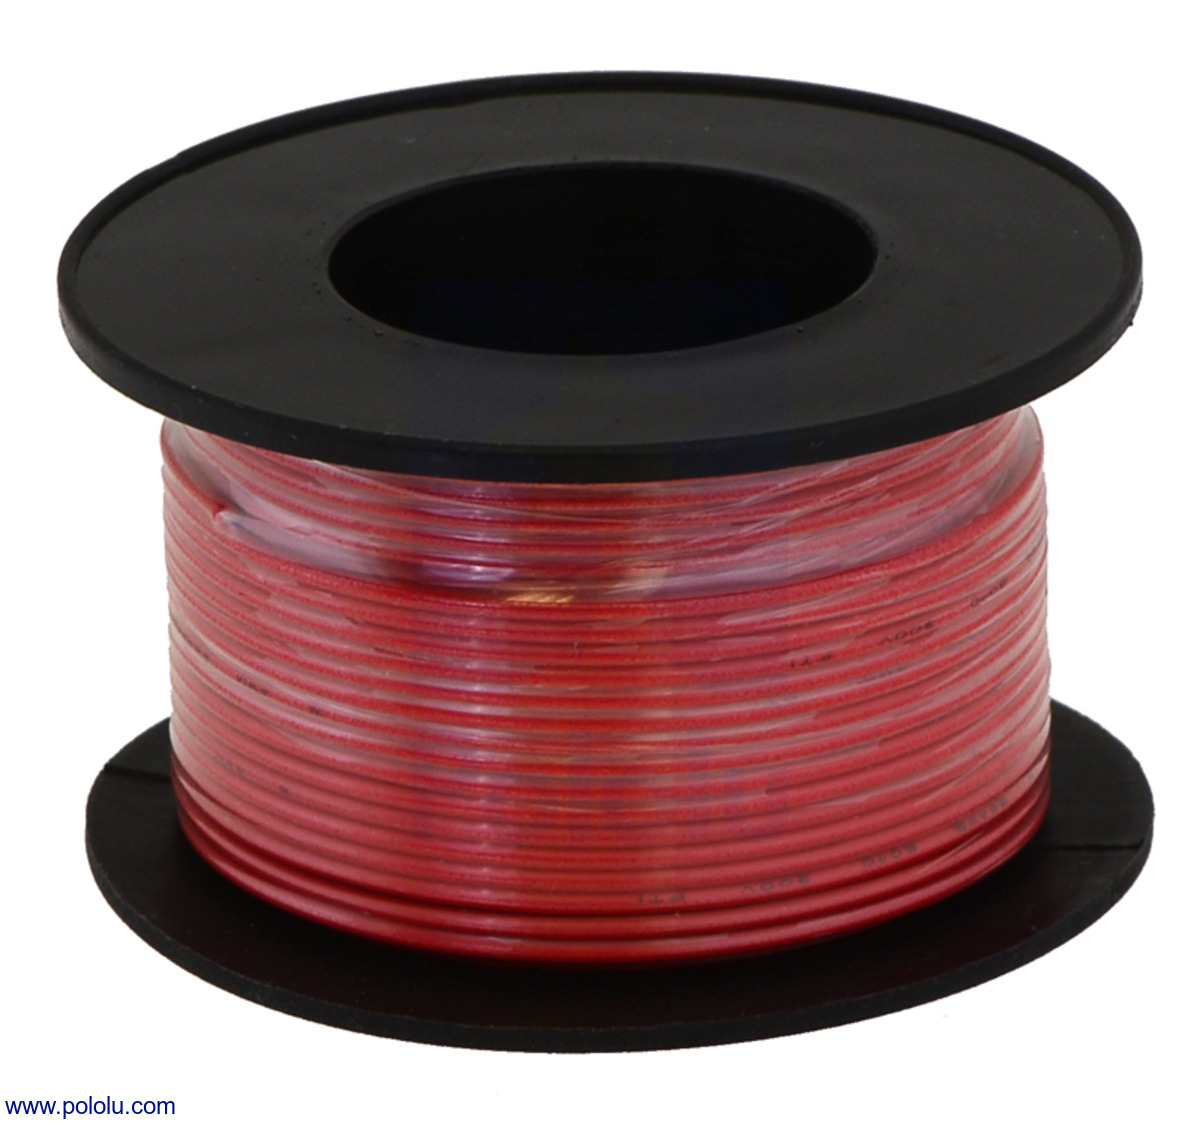 RED 22 AWG Gauge Stranded Hook Up Wire Kit 1000 ft Ea REEL UL1007 300 Volt